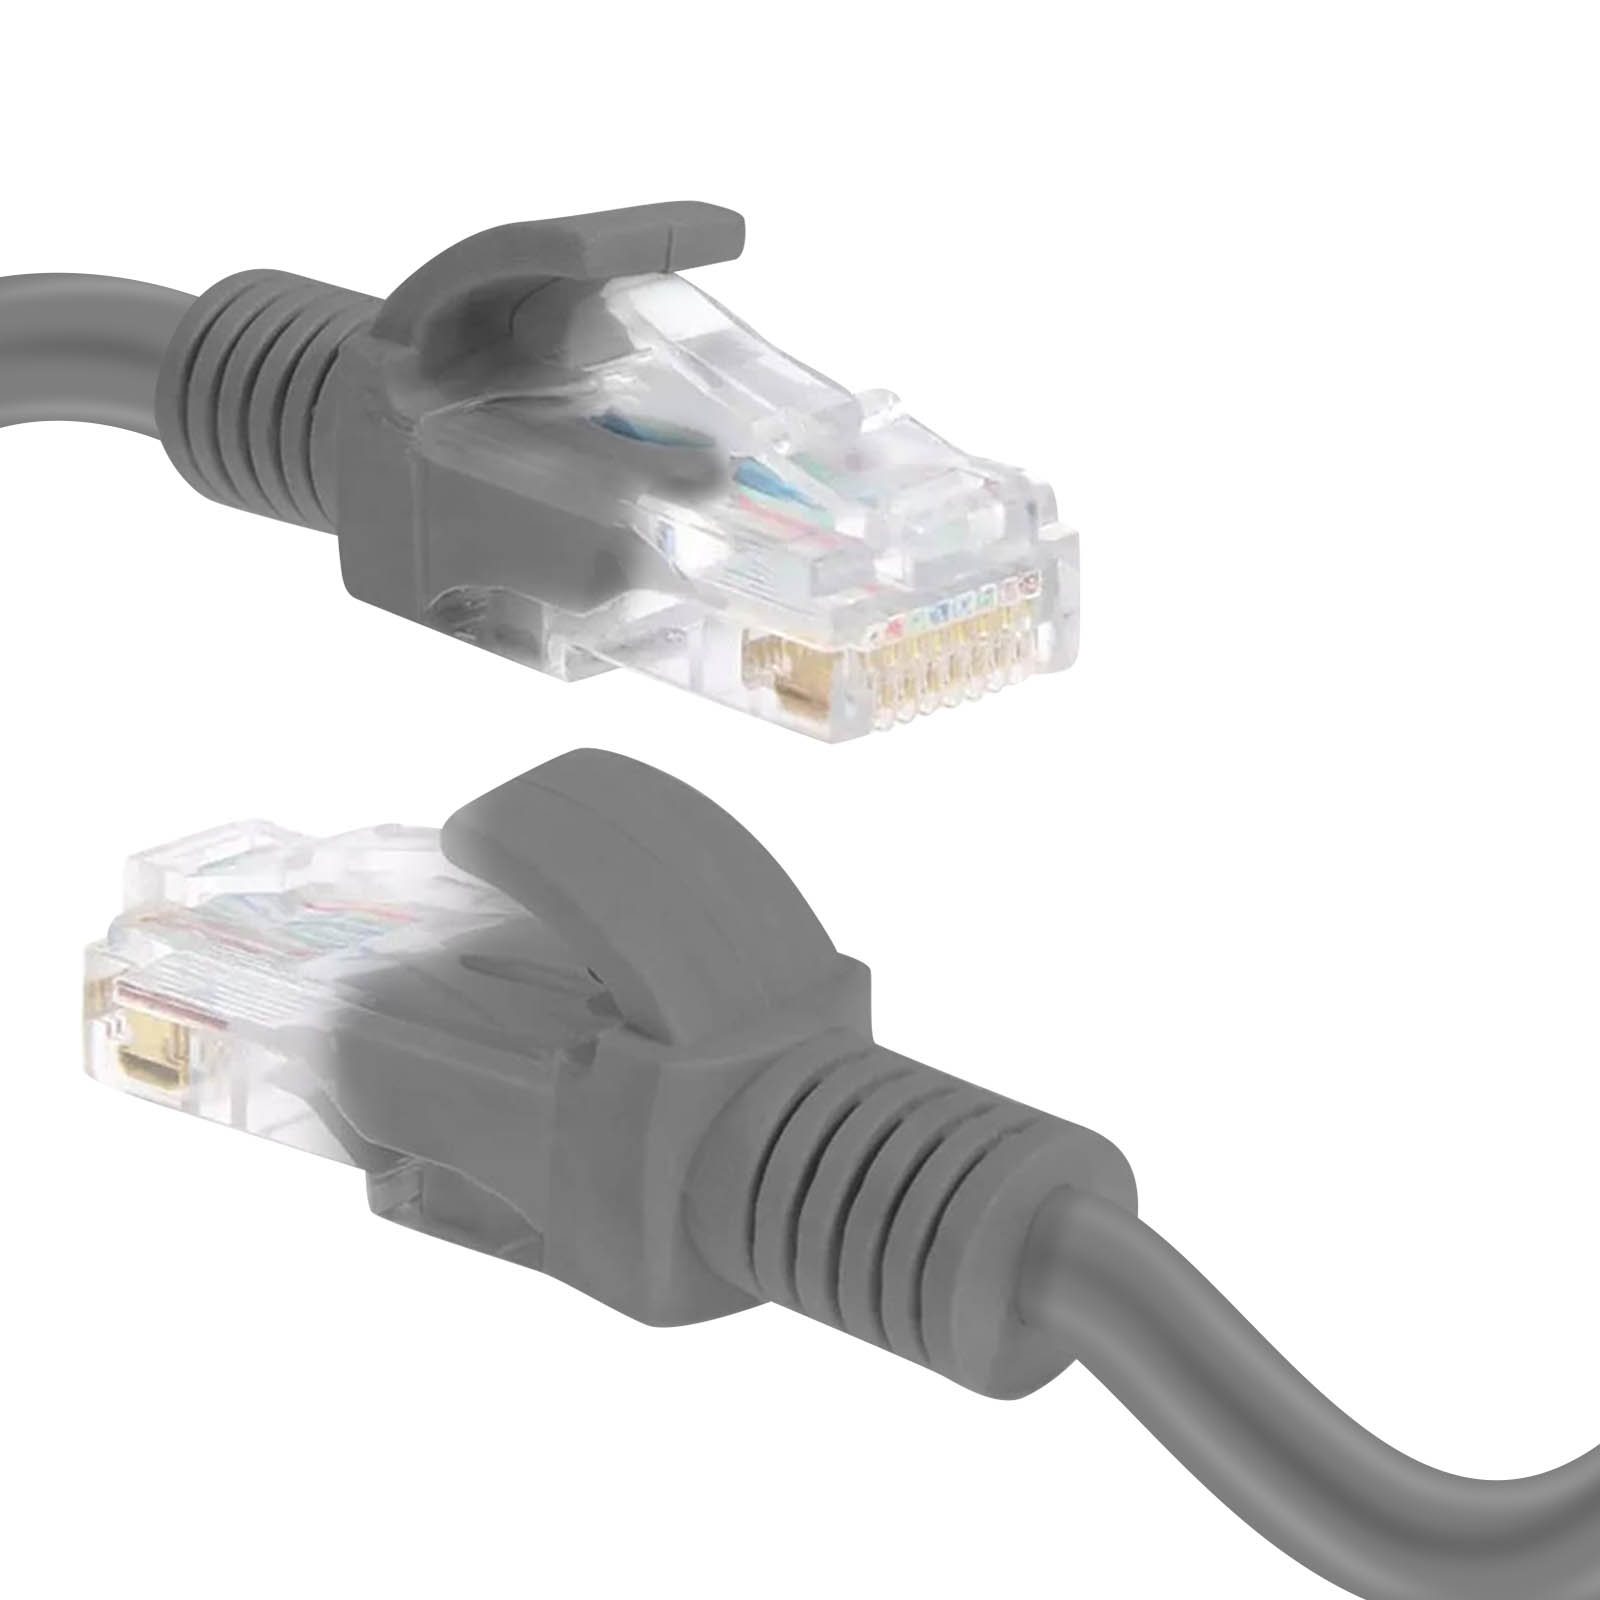 m LINQ Kabel, Ethernet Ethernet, 1,8 RJ45 CAT6, 1.8m,